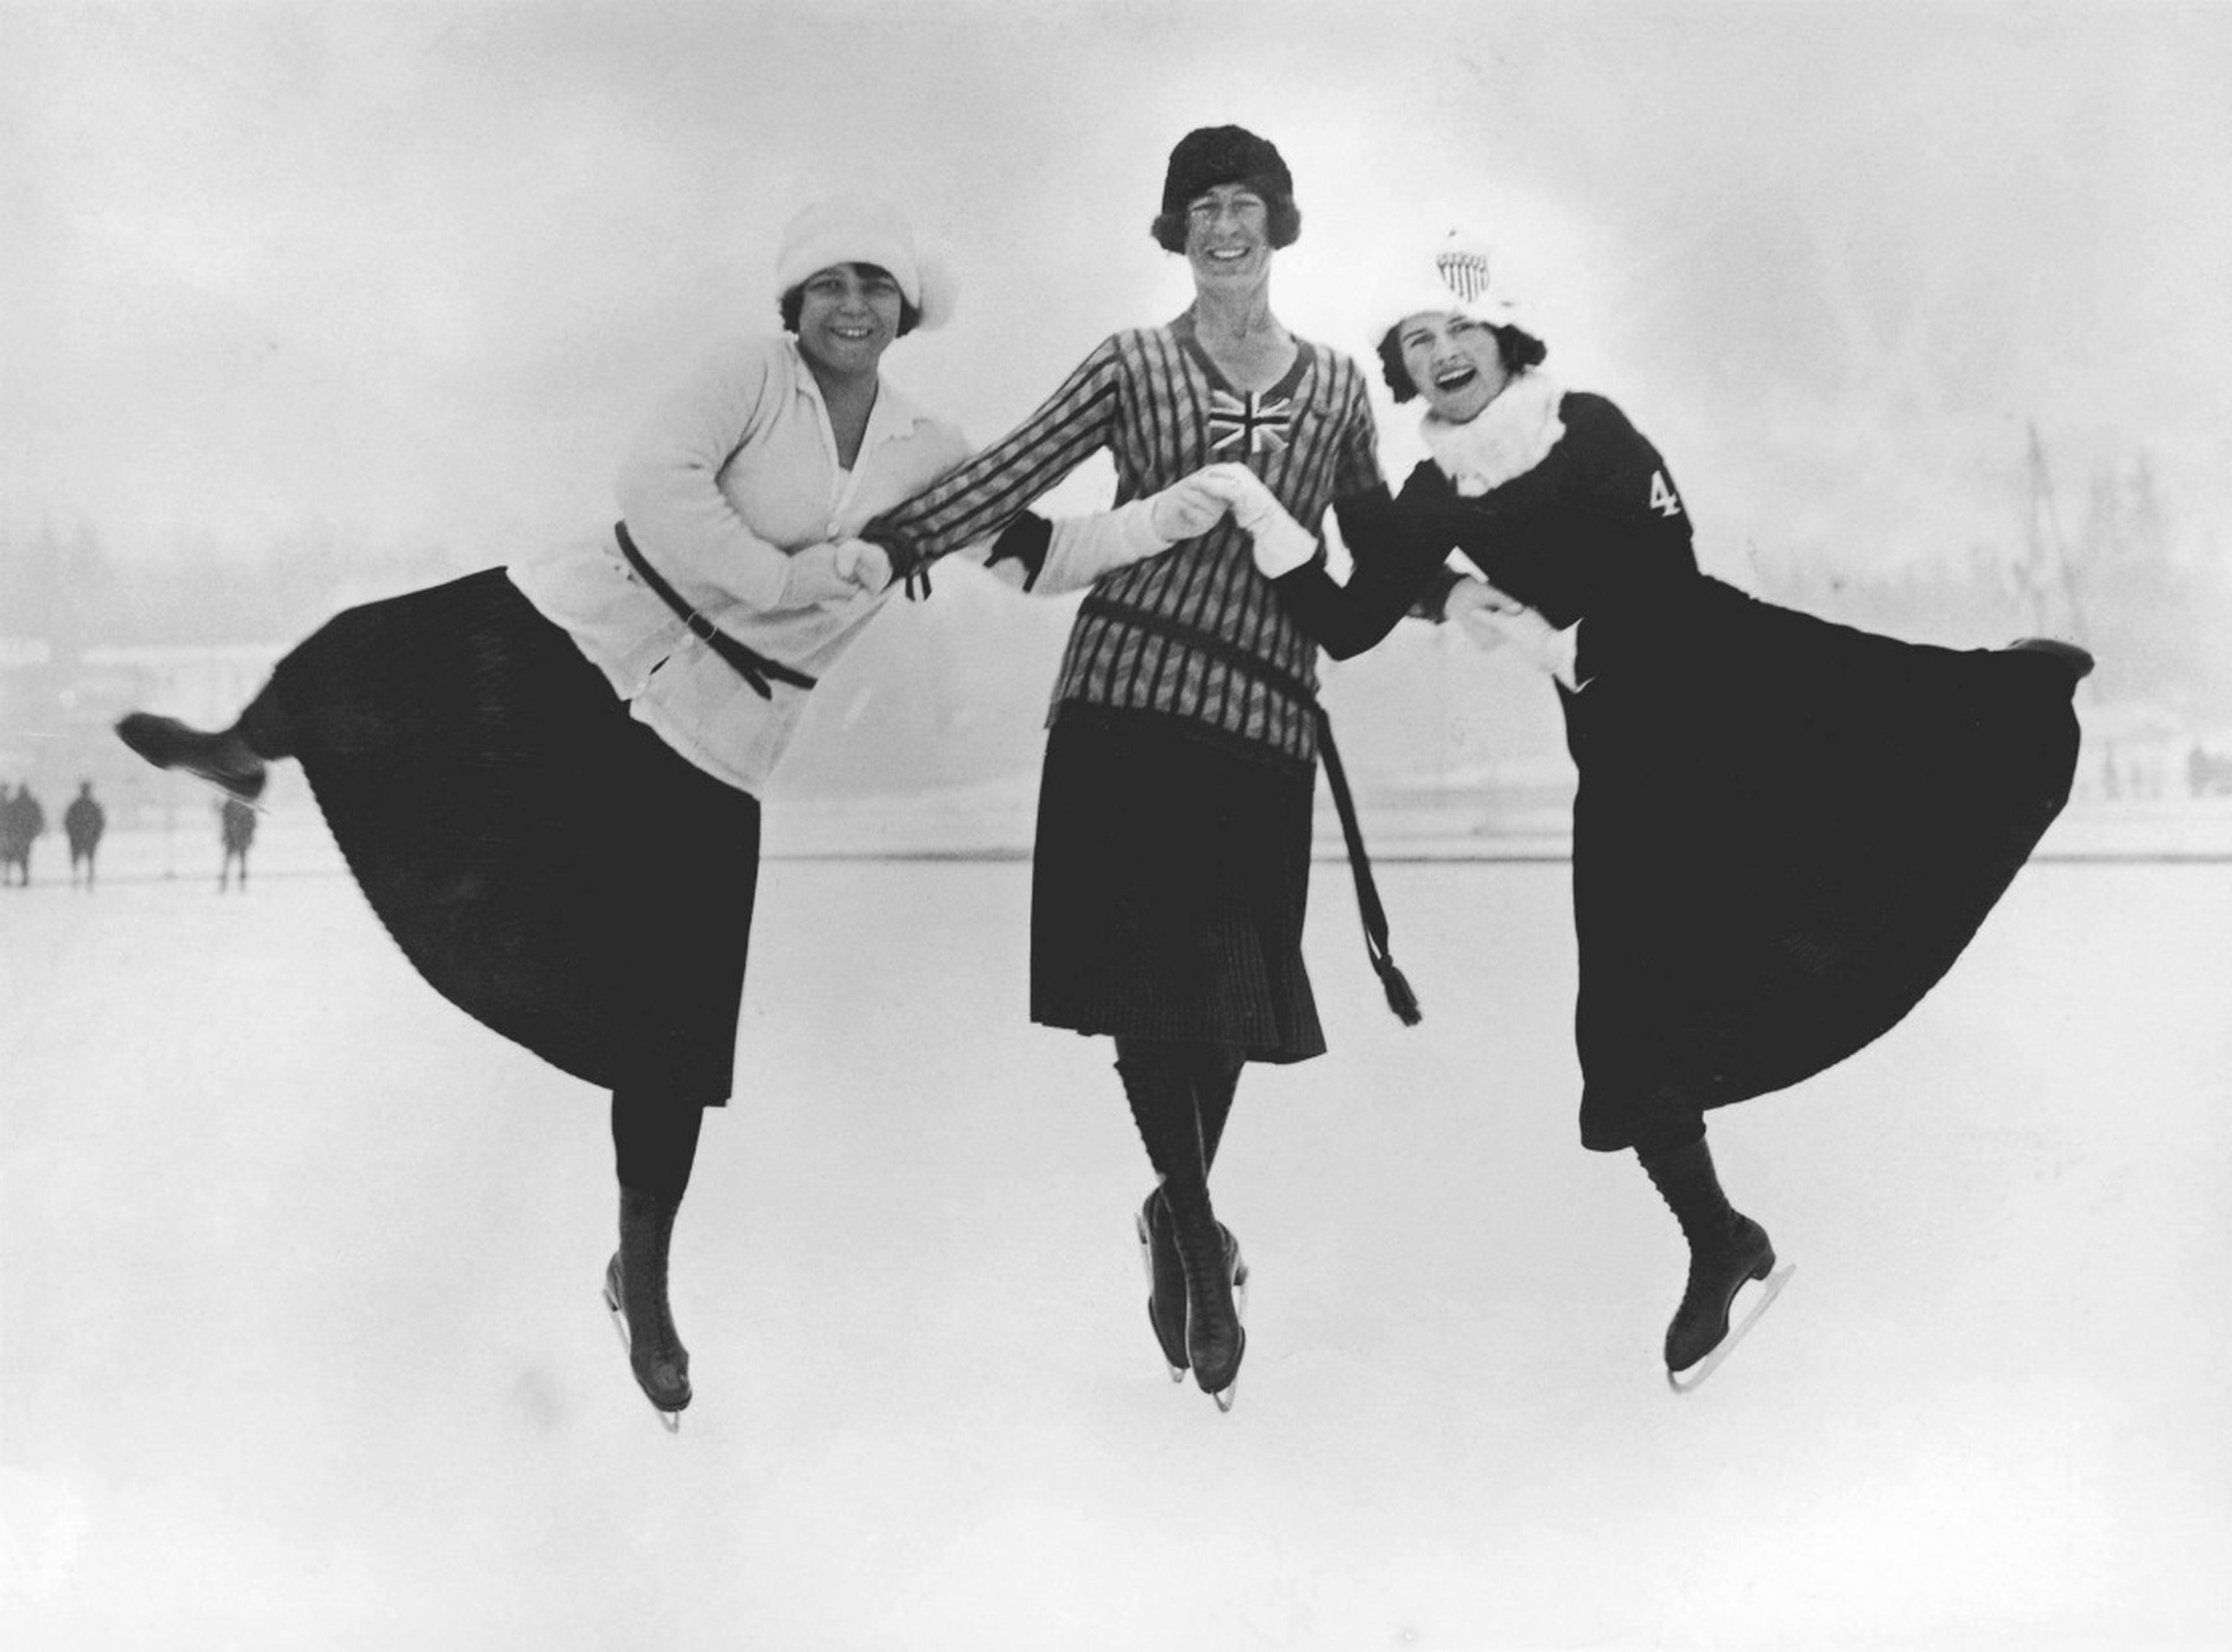 De izqd. a der., las patinadoras artísticas Herma Planck-Szabo (Hungría), Ethel Muckelt (Reino Unido) y Beatrix Loughran (Estados Unidos) fotografiadas en Chamonix (Francia) el 30 de enero de 1924.